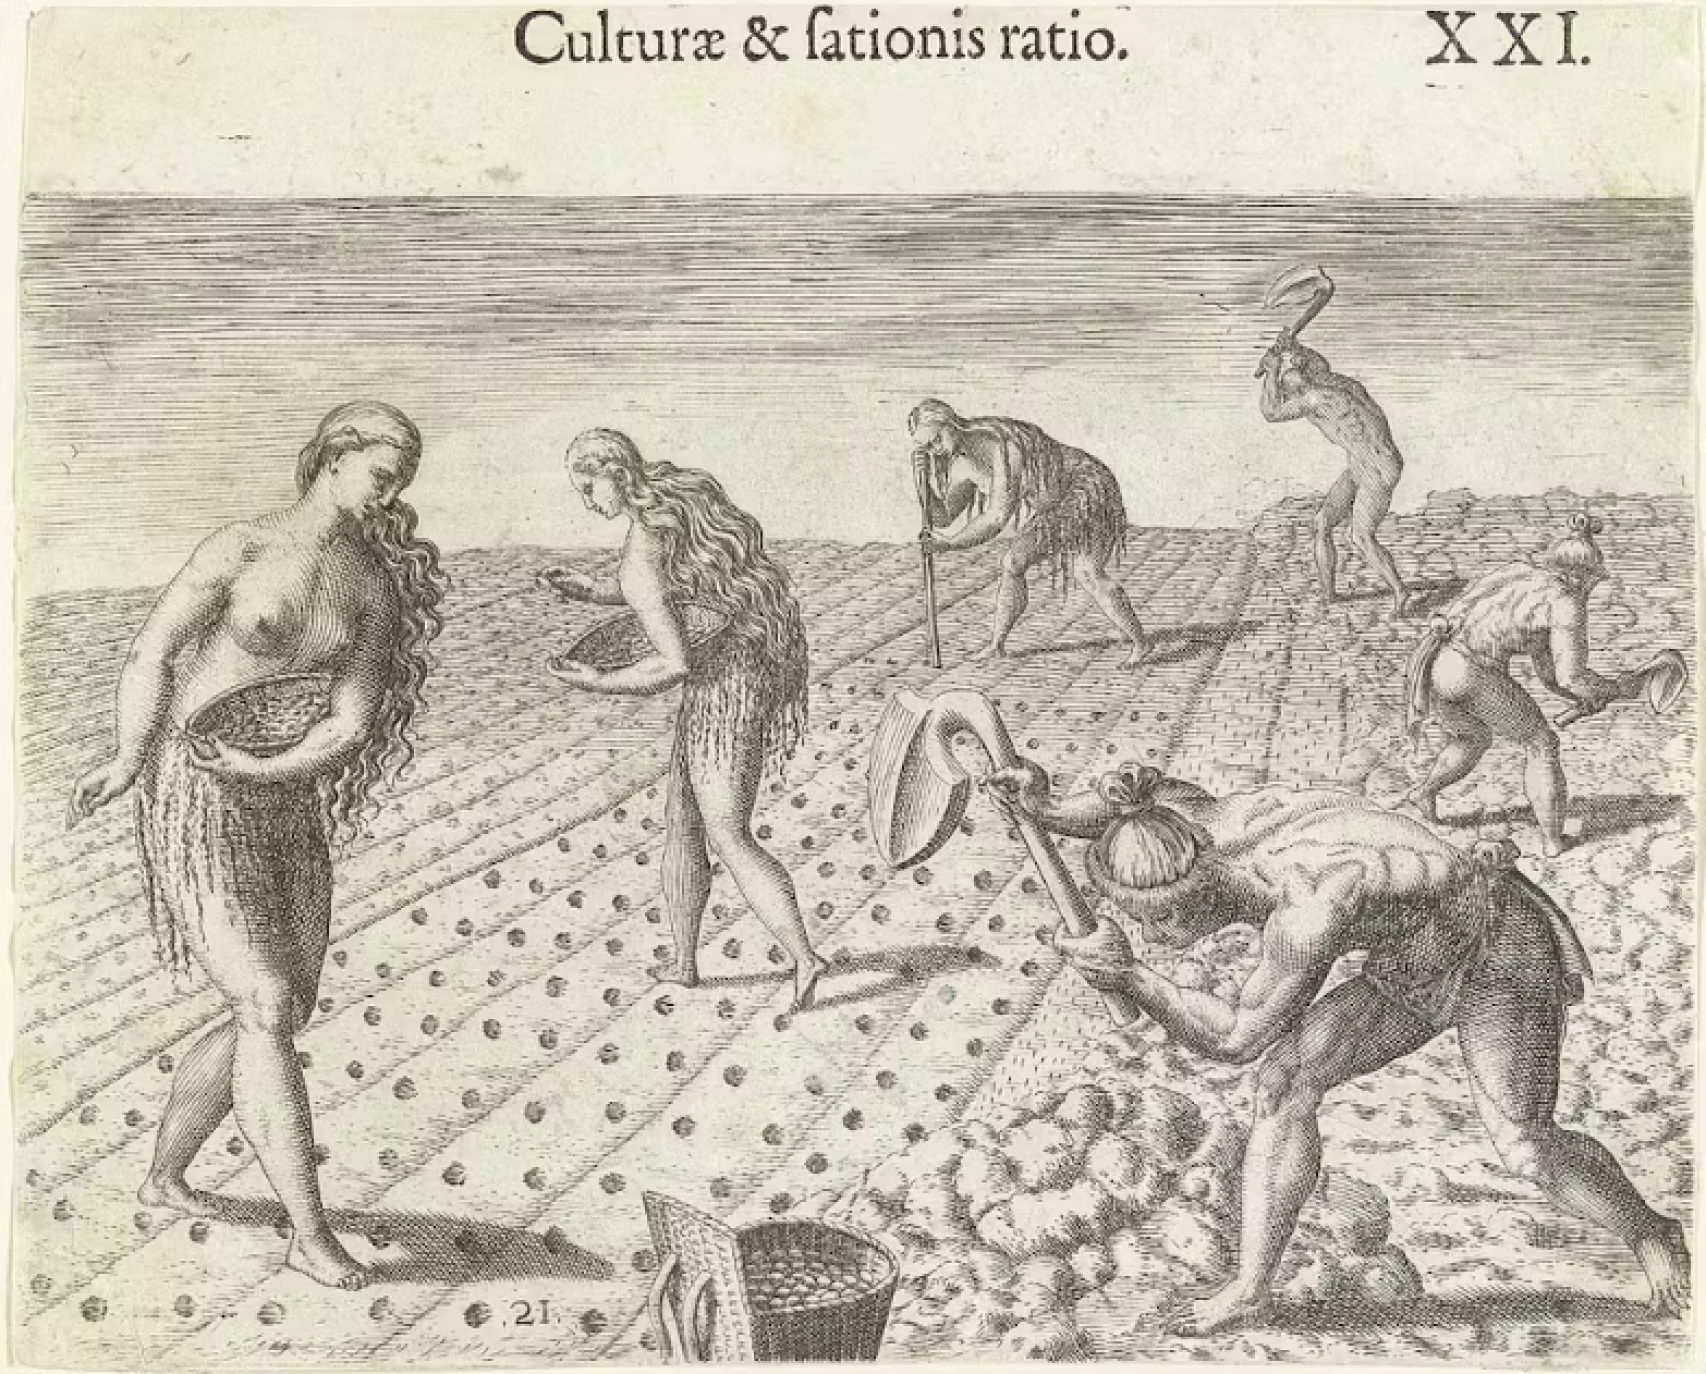 Grabado de Theodor de Bry que retrata la agricultura entre los nativos americanos.